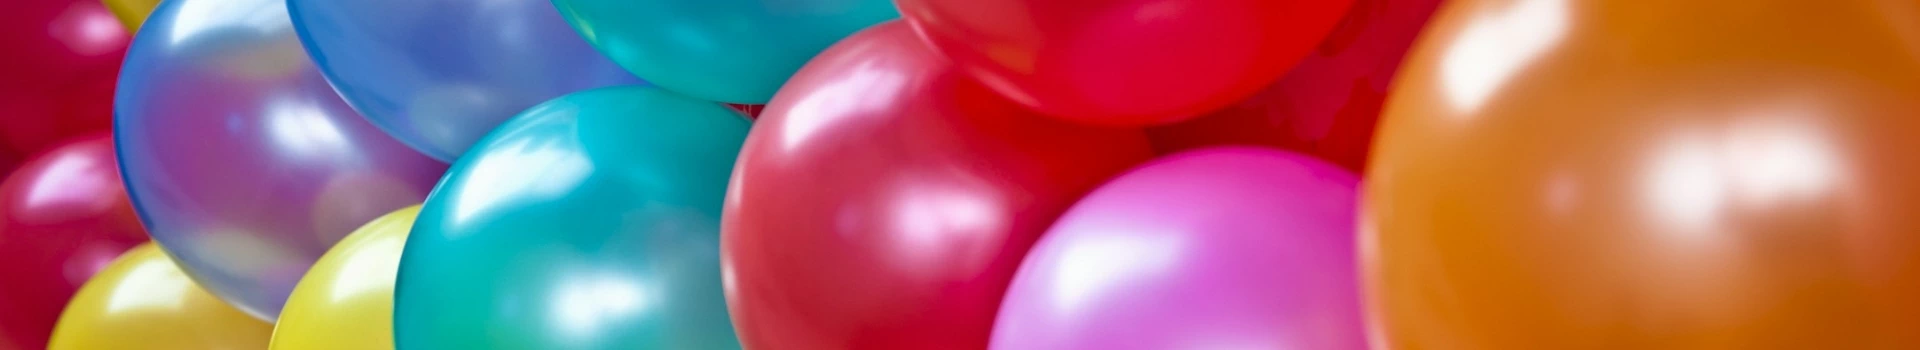 niebieskie, różowe i inne kolorowe balony